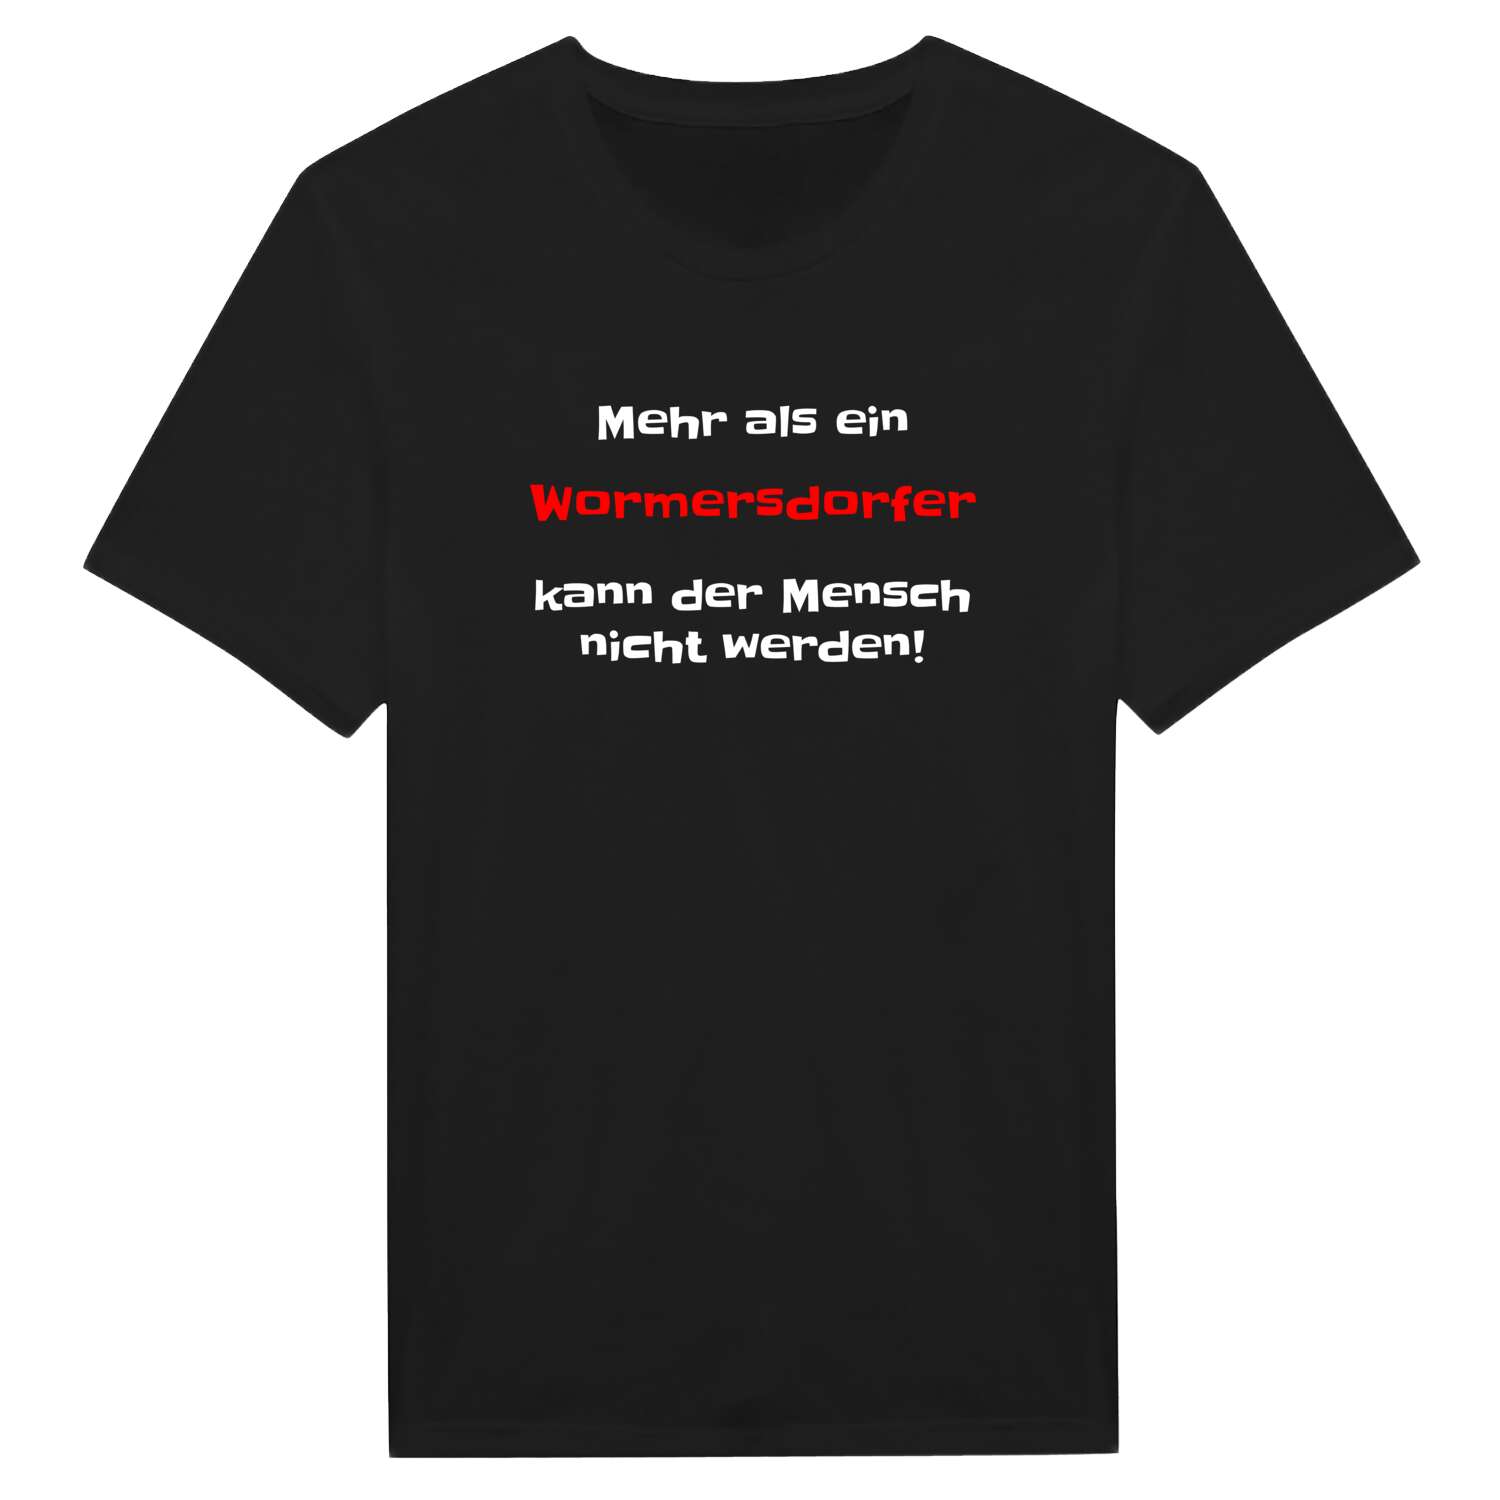 Wormersdorf T-Shirt »Mehr als ein«